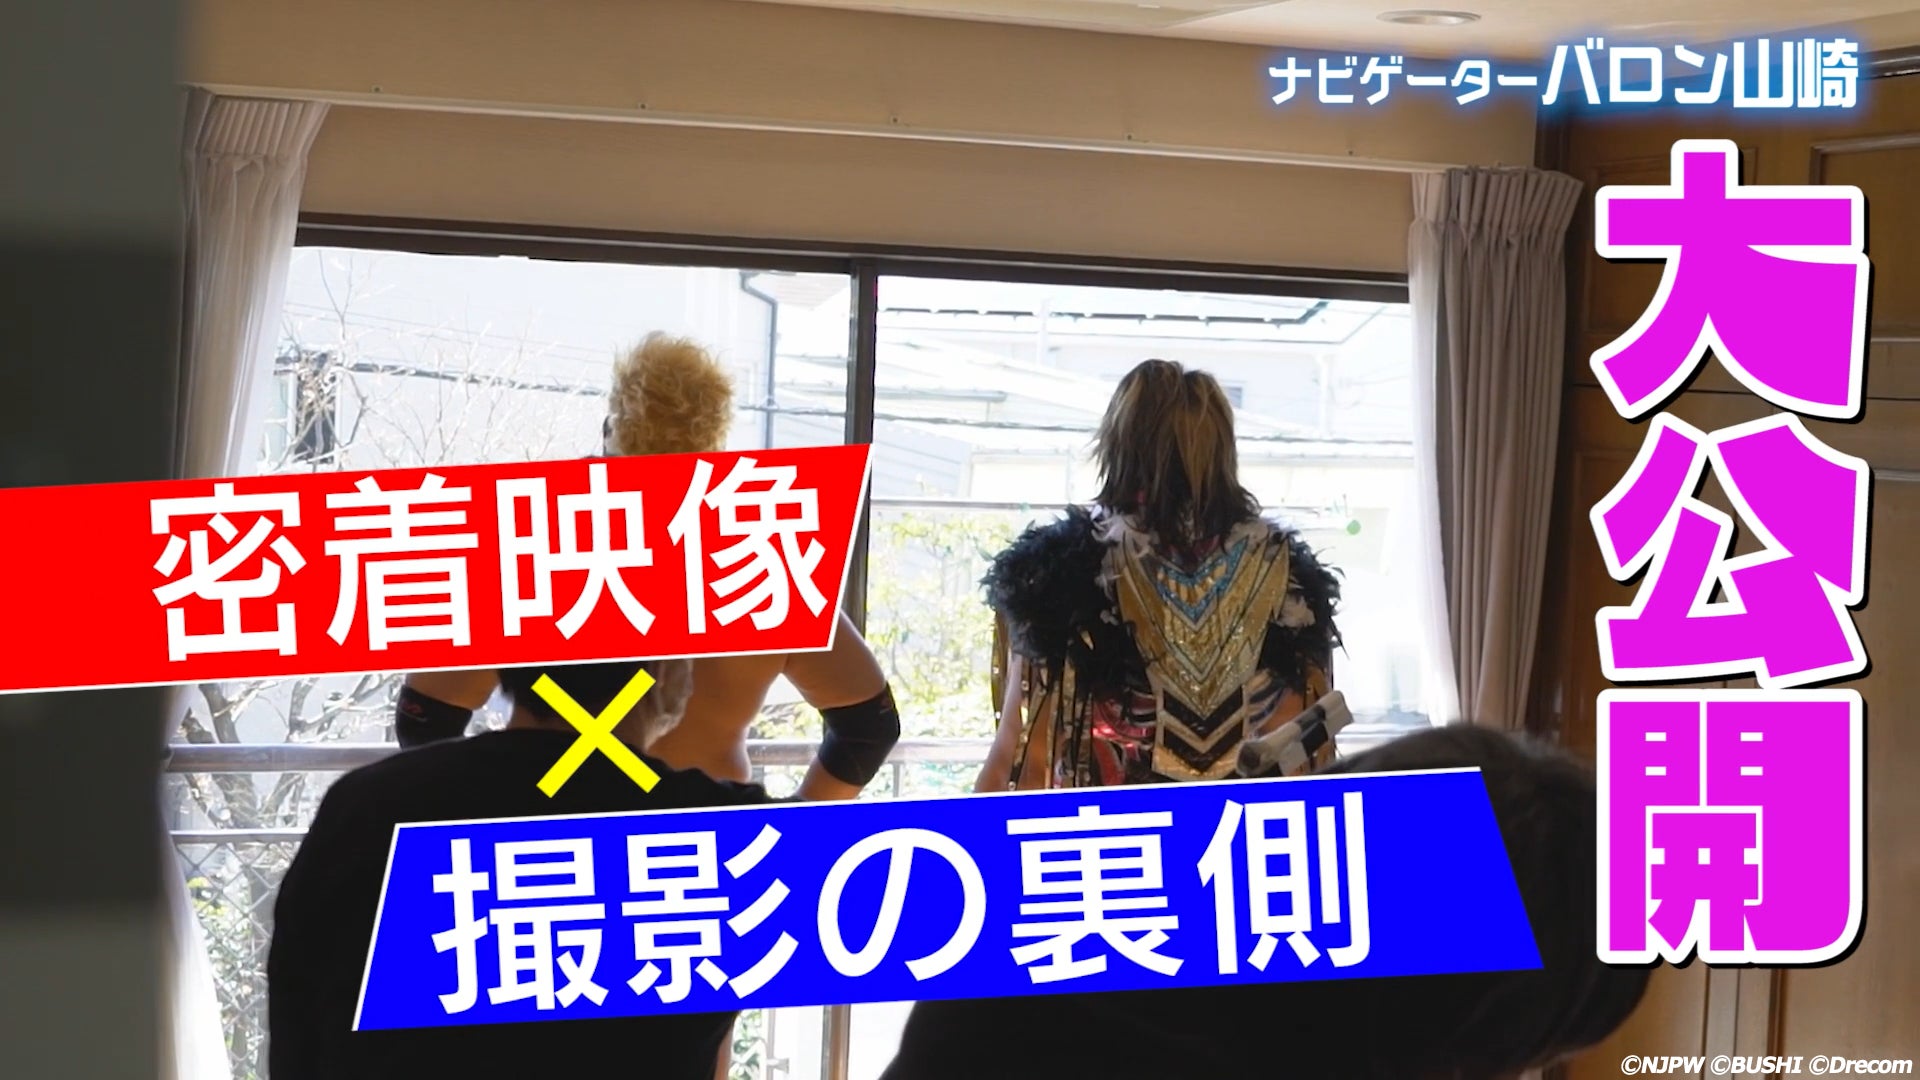 ブシモ『新日本プロレスSTRONG SPIRITS』実写TVCMのメイキング公開と公開記念として出演選手直筆サイン付きプレゼントキャンペーンを実施！